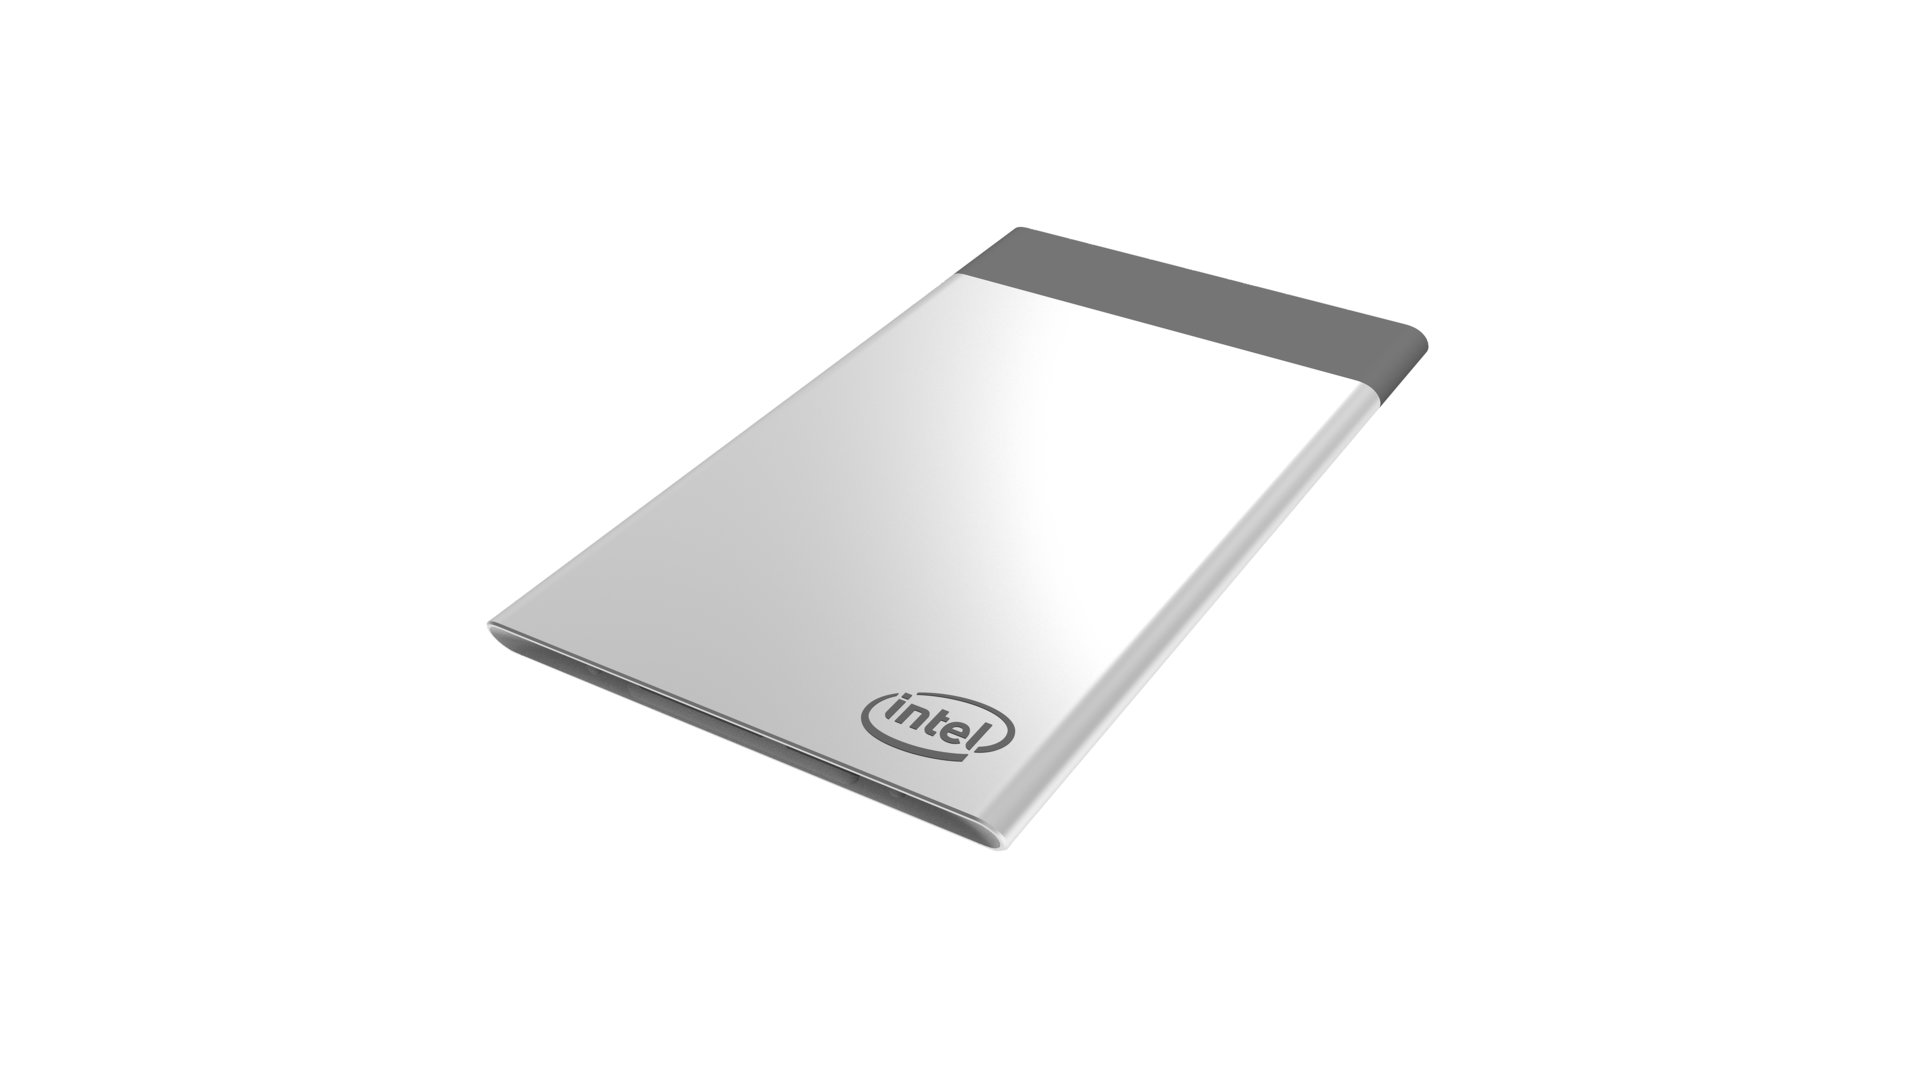 Intels Compute Card ist etwas größer als eine Kreditkarte